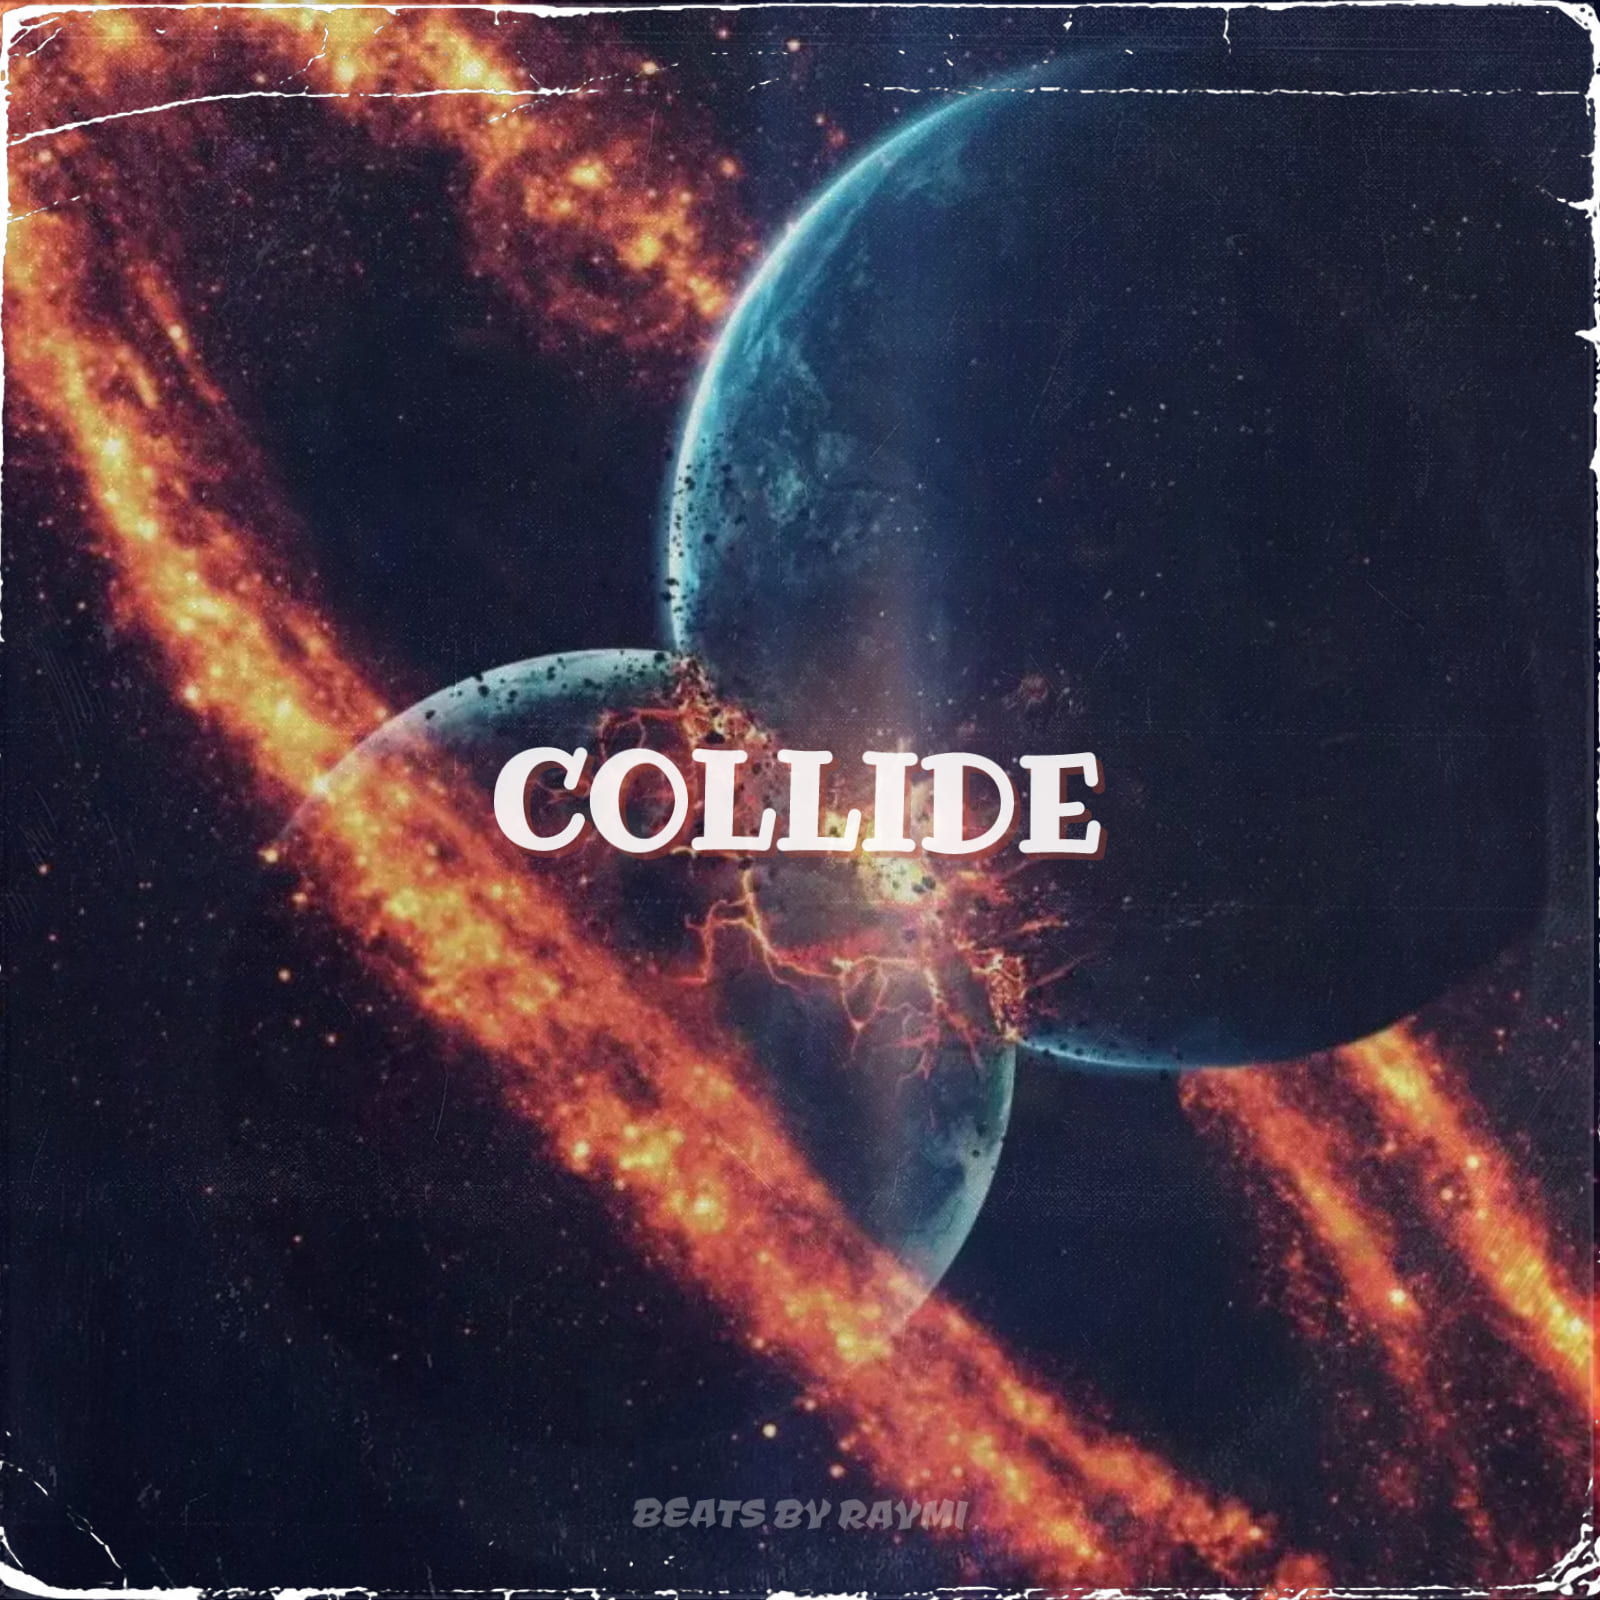 обложка бита, Raymi, музыка, cover, Collide (энергичный, танцевальный edm pop бит)